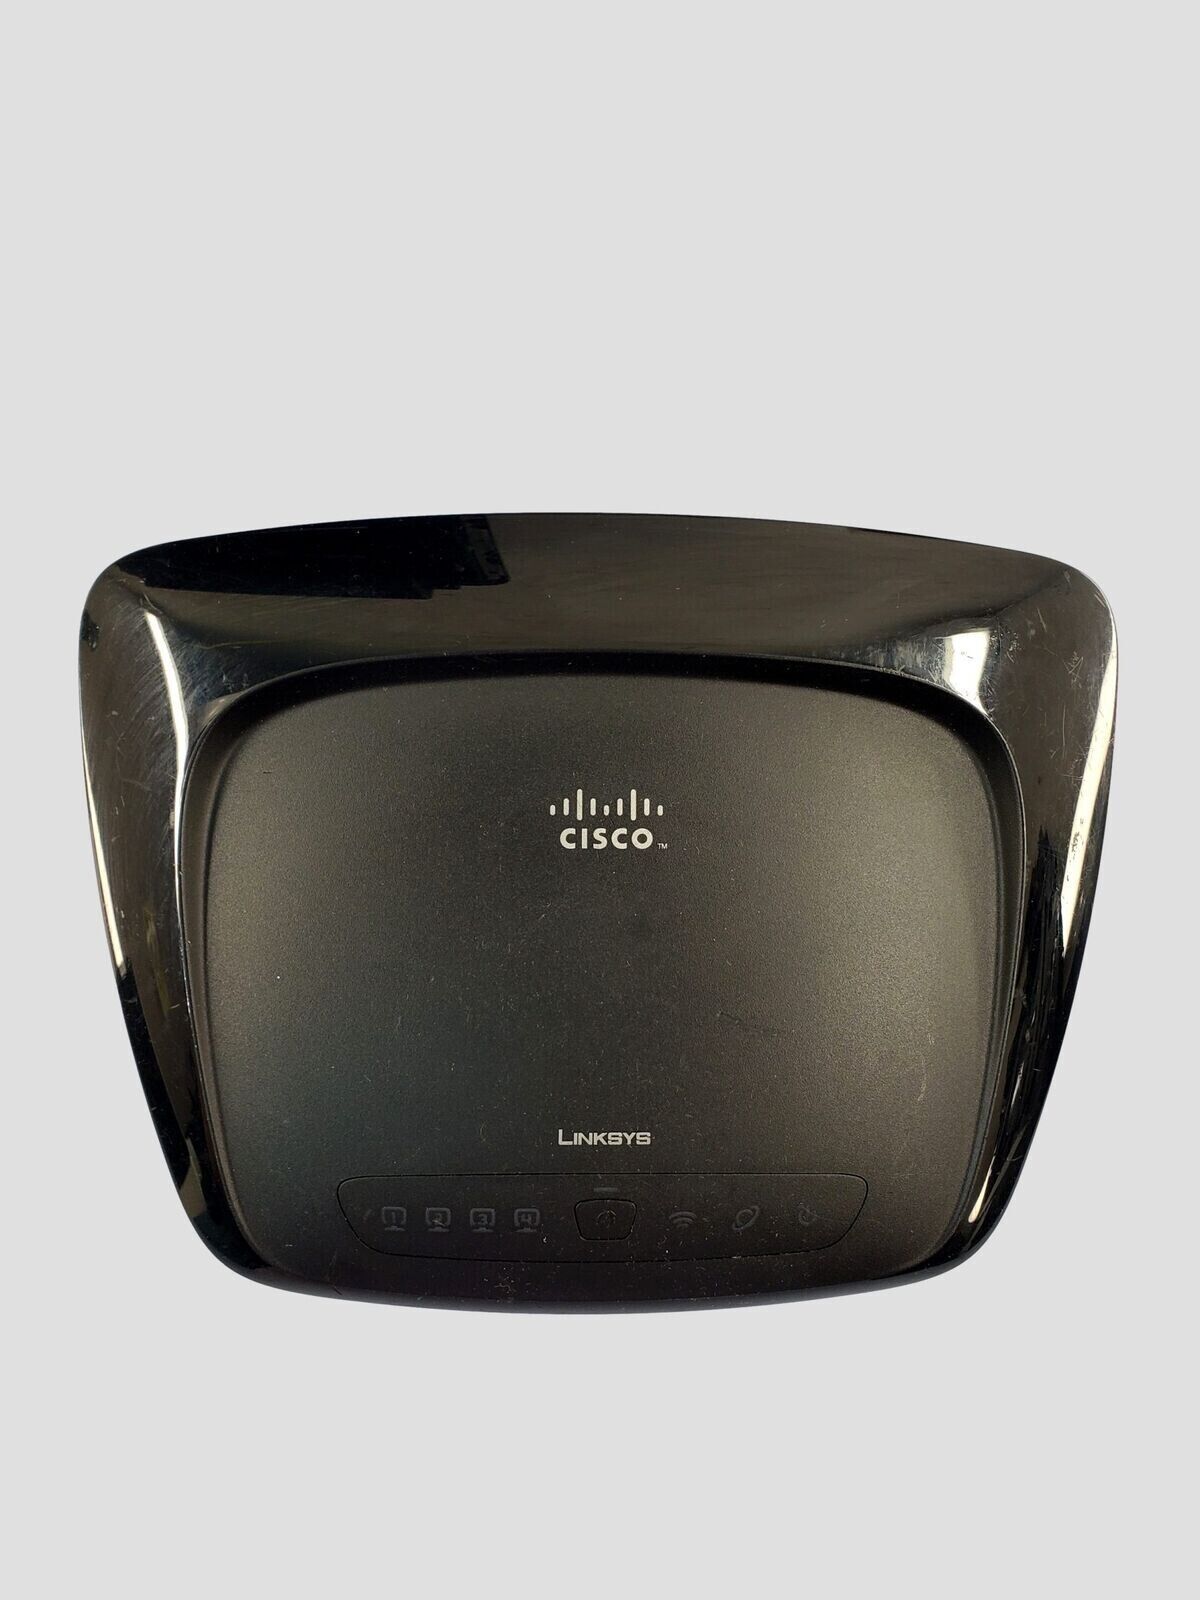 Cisco-Linksys WRT54G2 Wireless-G Broadband Router WRT54G2